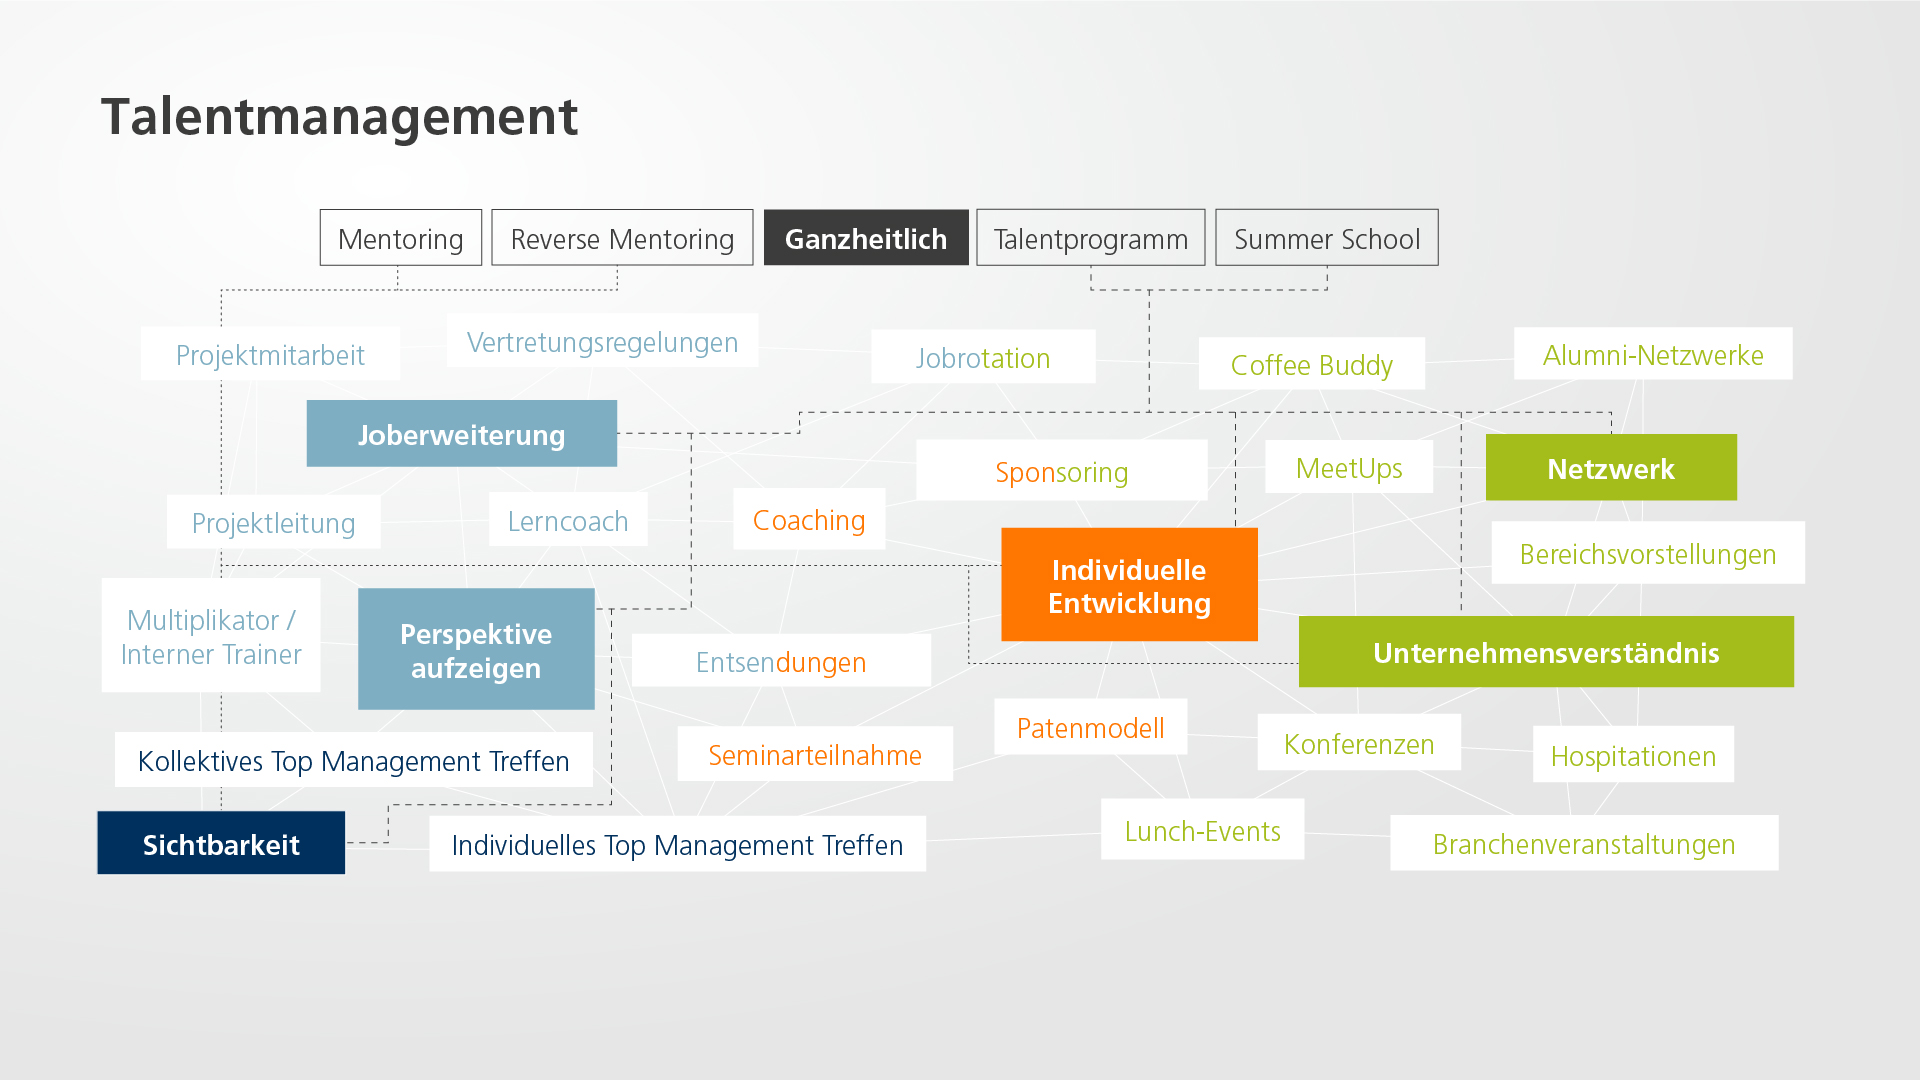 Talentmanagement_Consulting_Talentmanagement